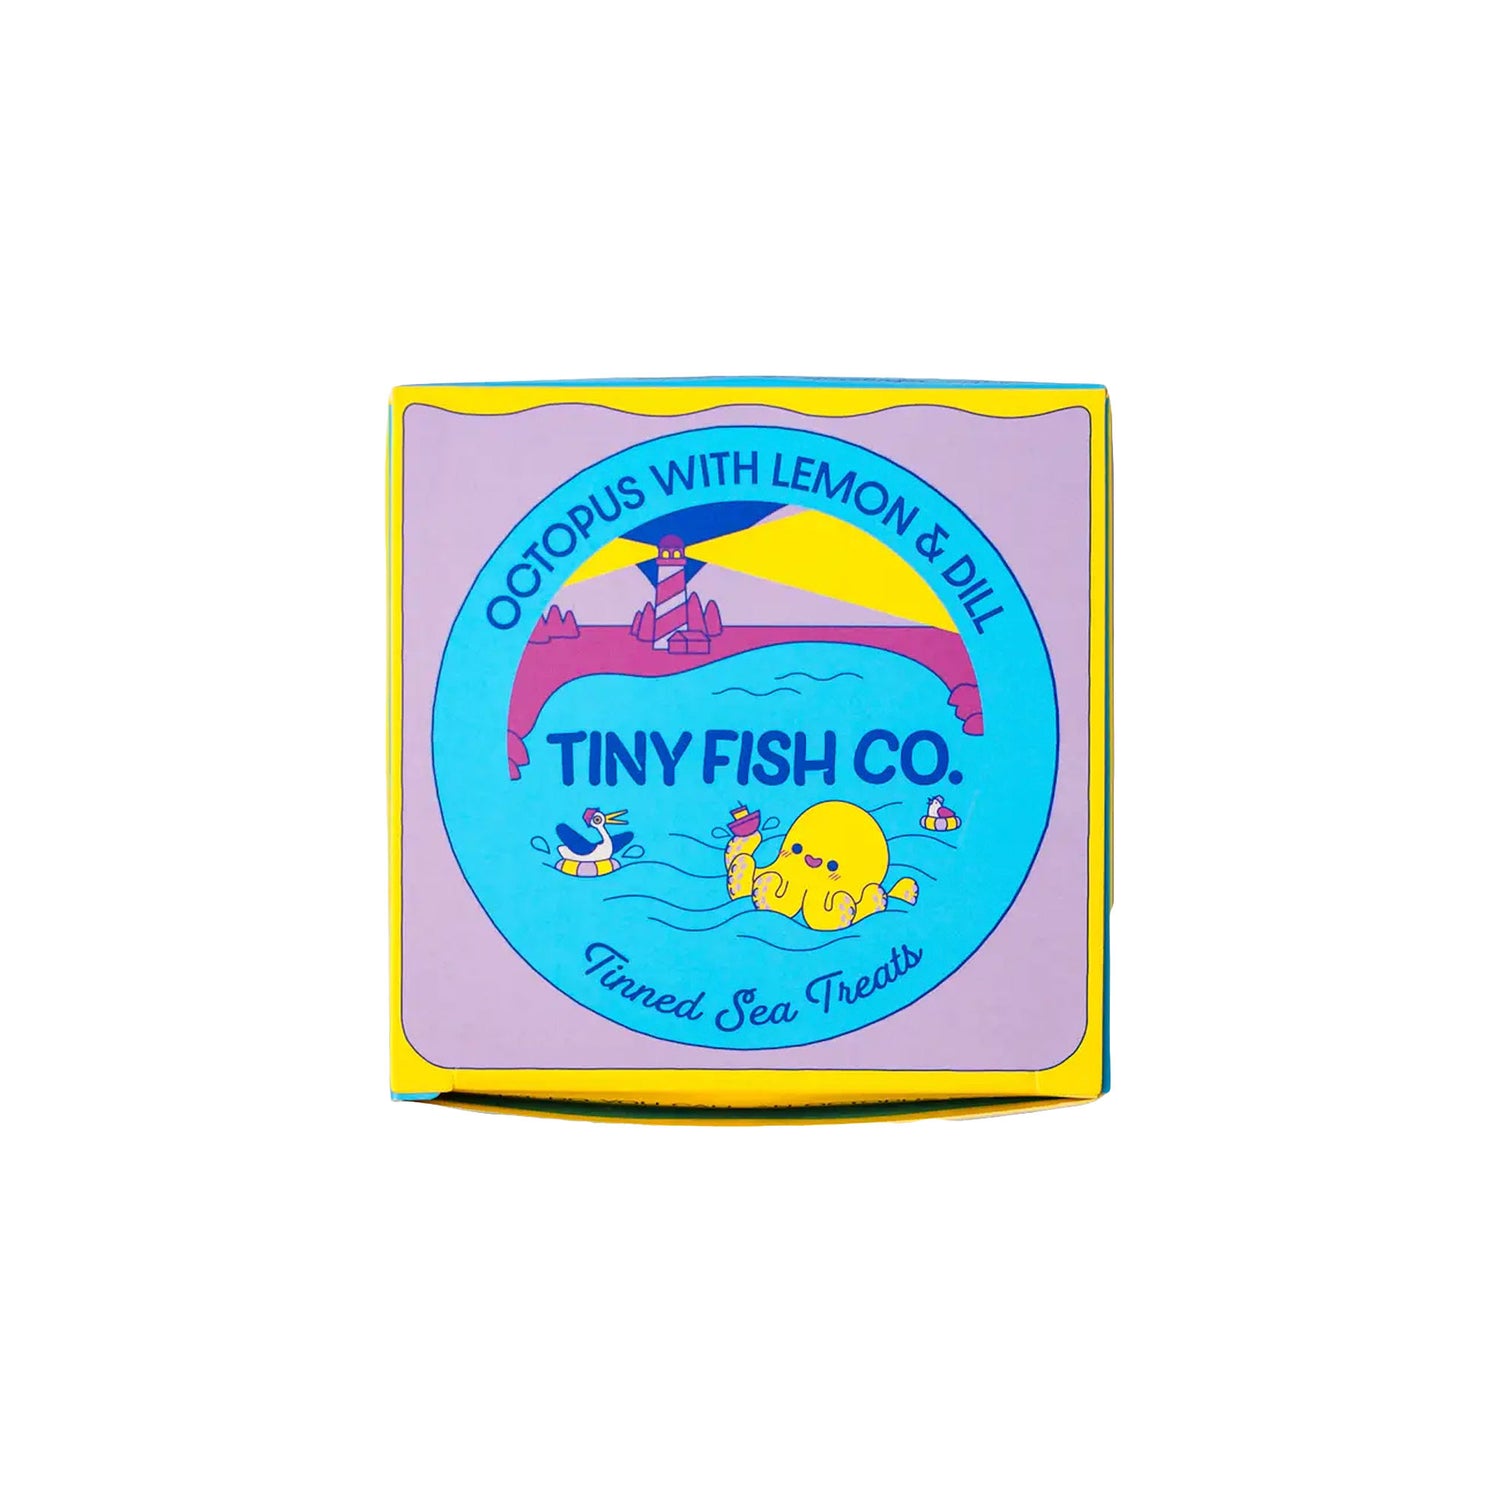 Tiny Fish Co.